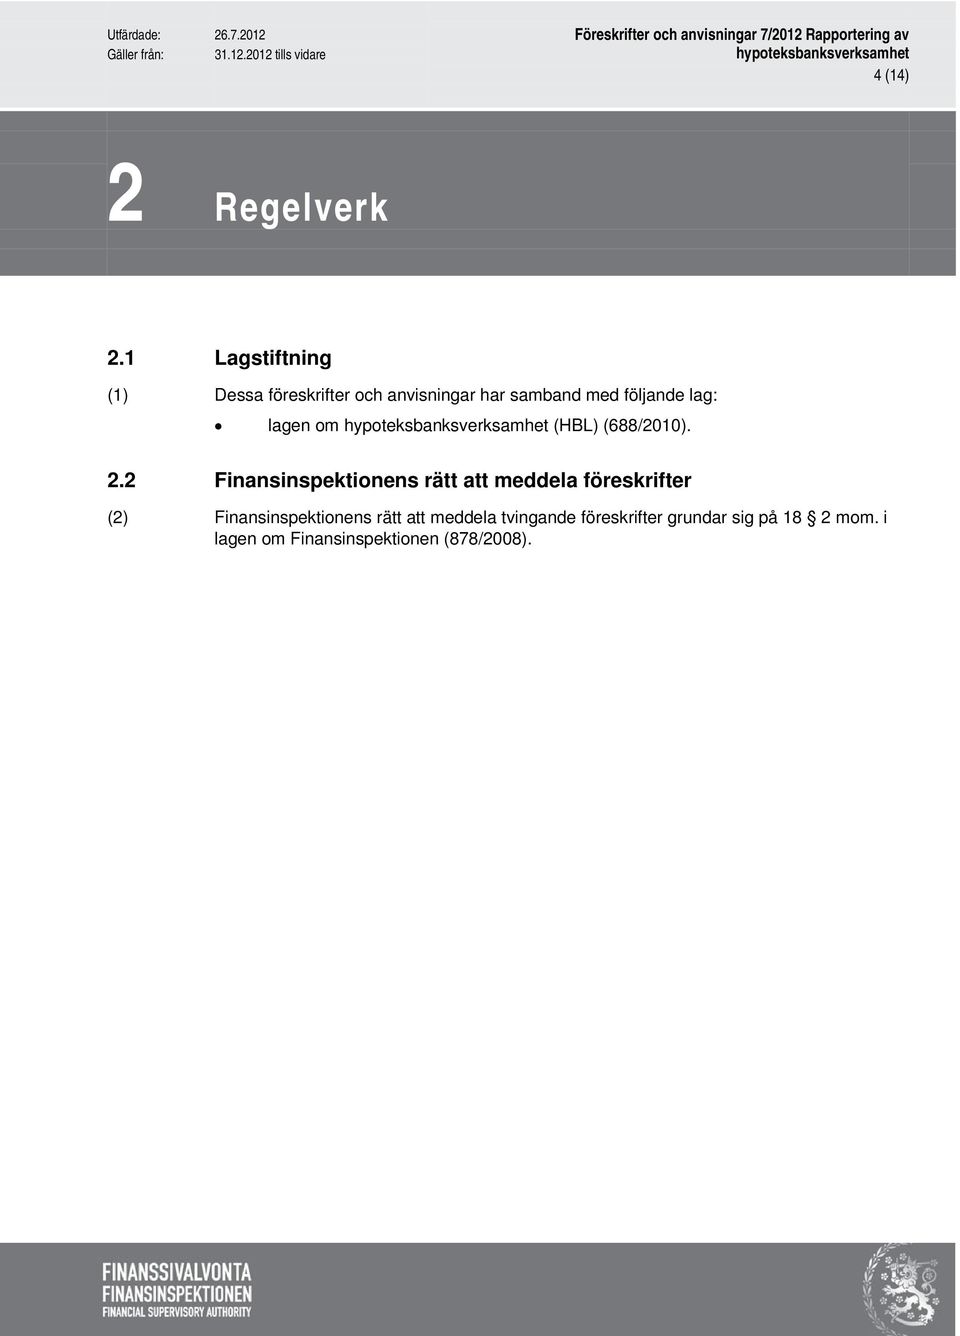 lag: lagen om (HBL) (688/2010). 2.